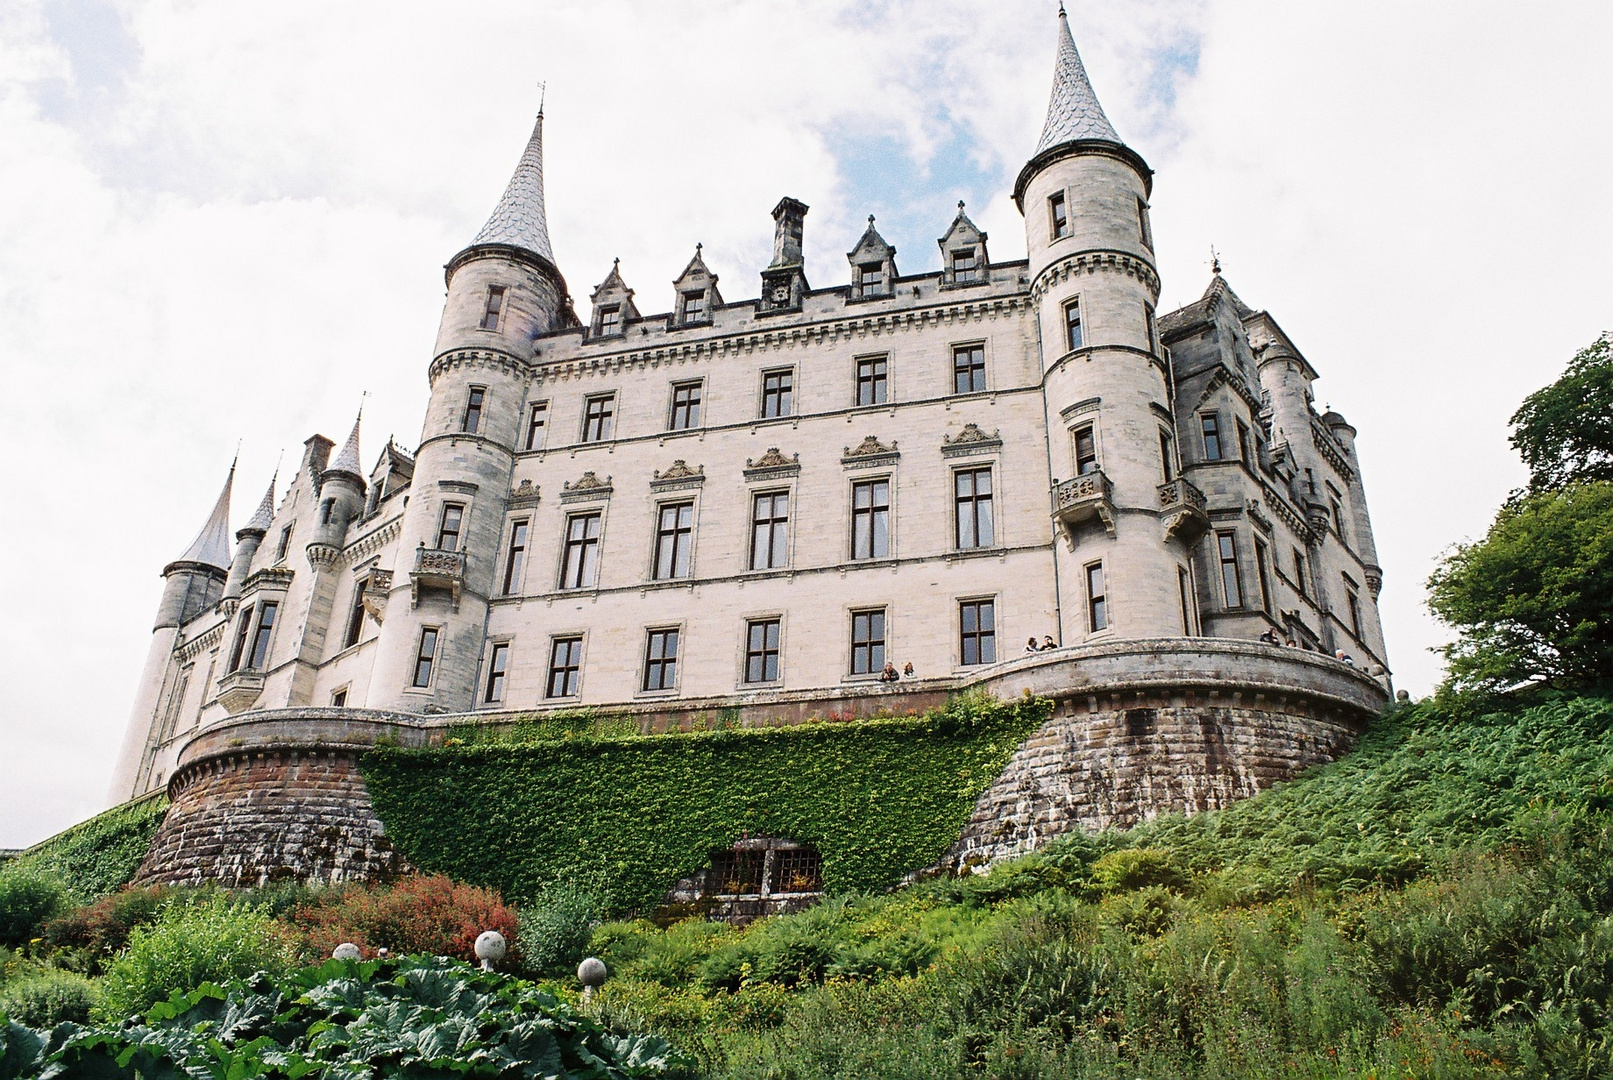 A Castle in Scotland